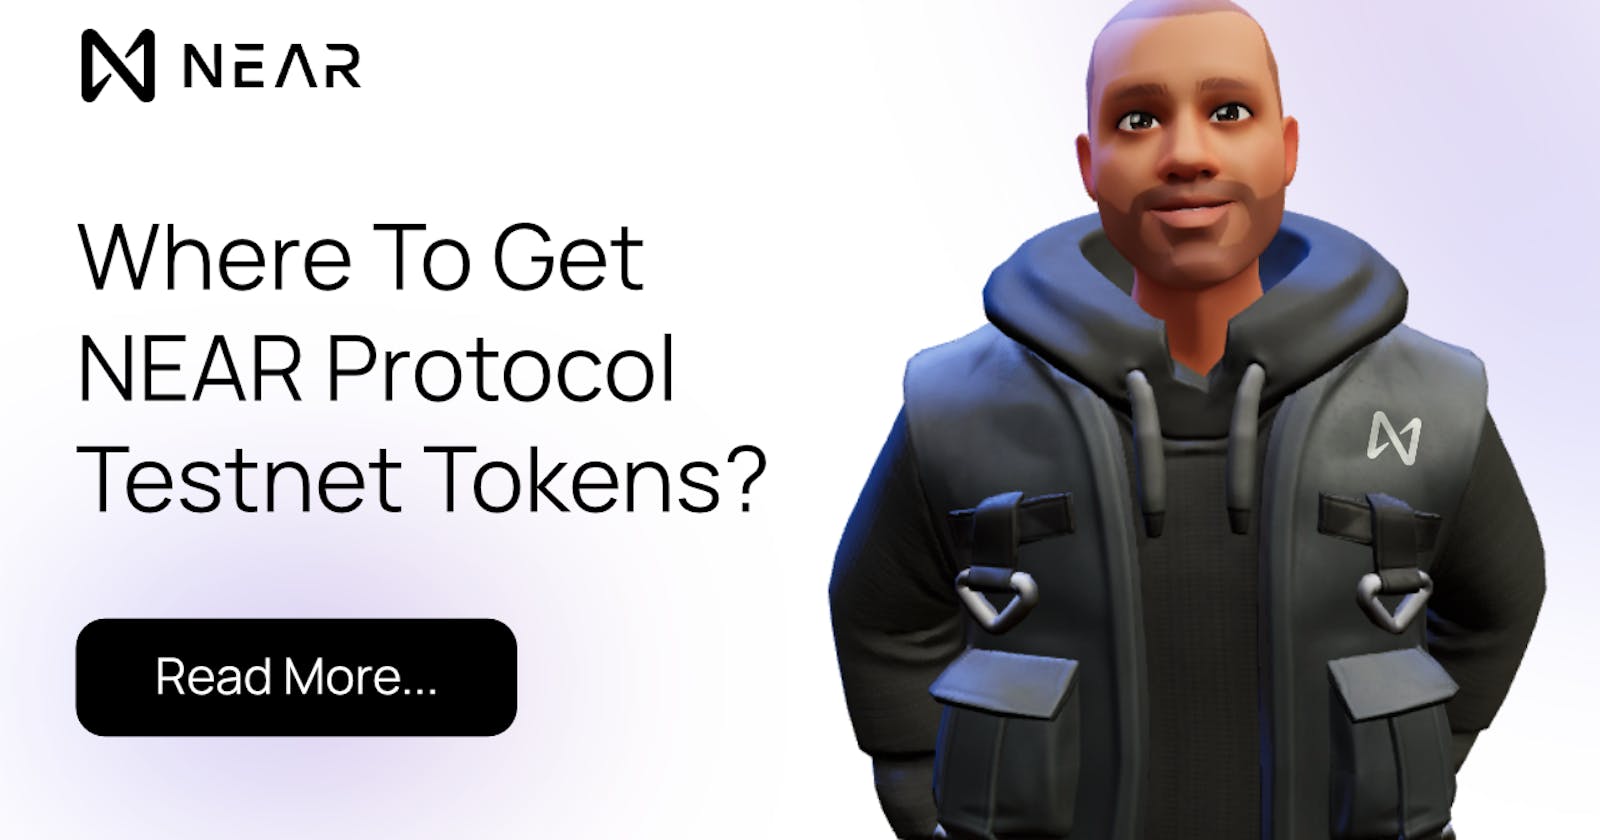 Where do you get NEAR Protocol Testnet tokens